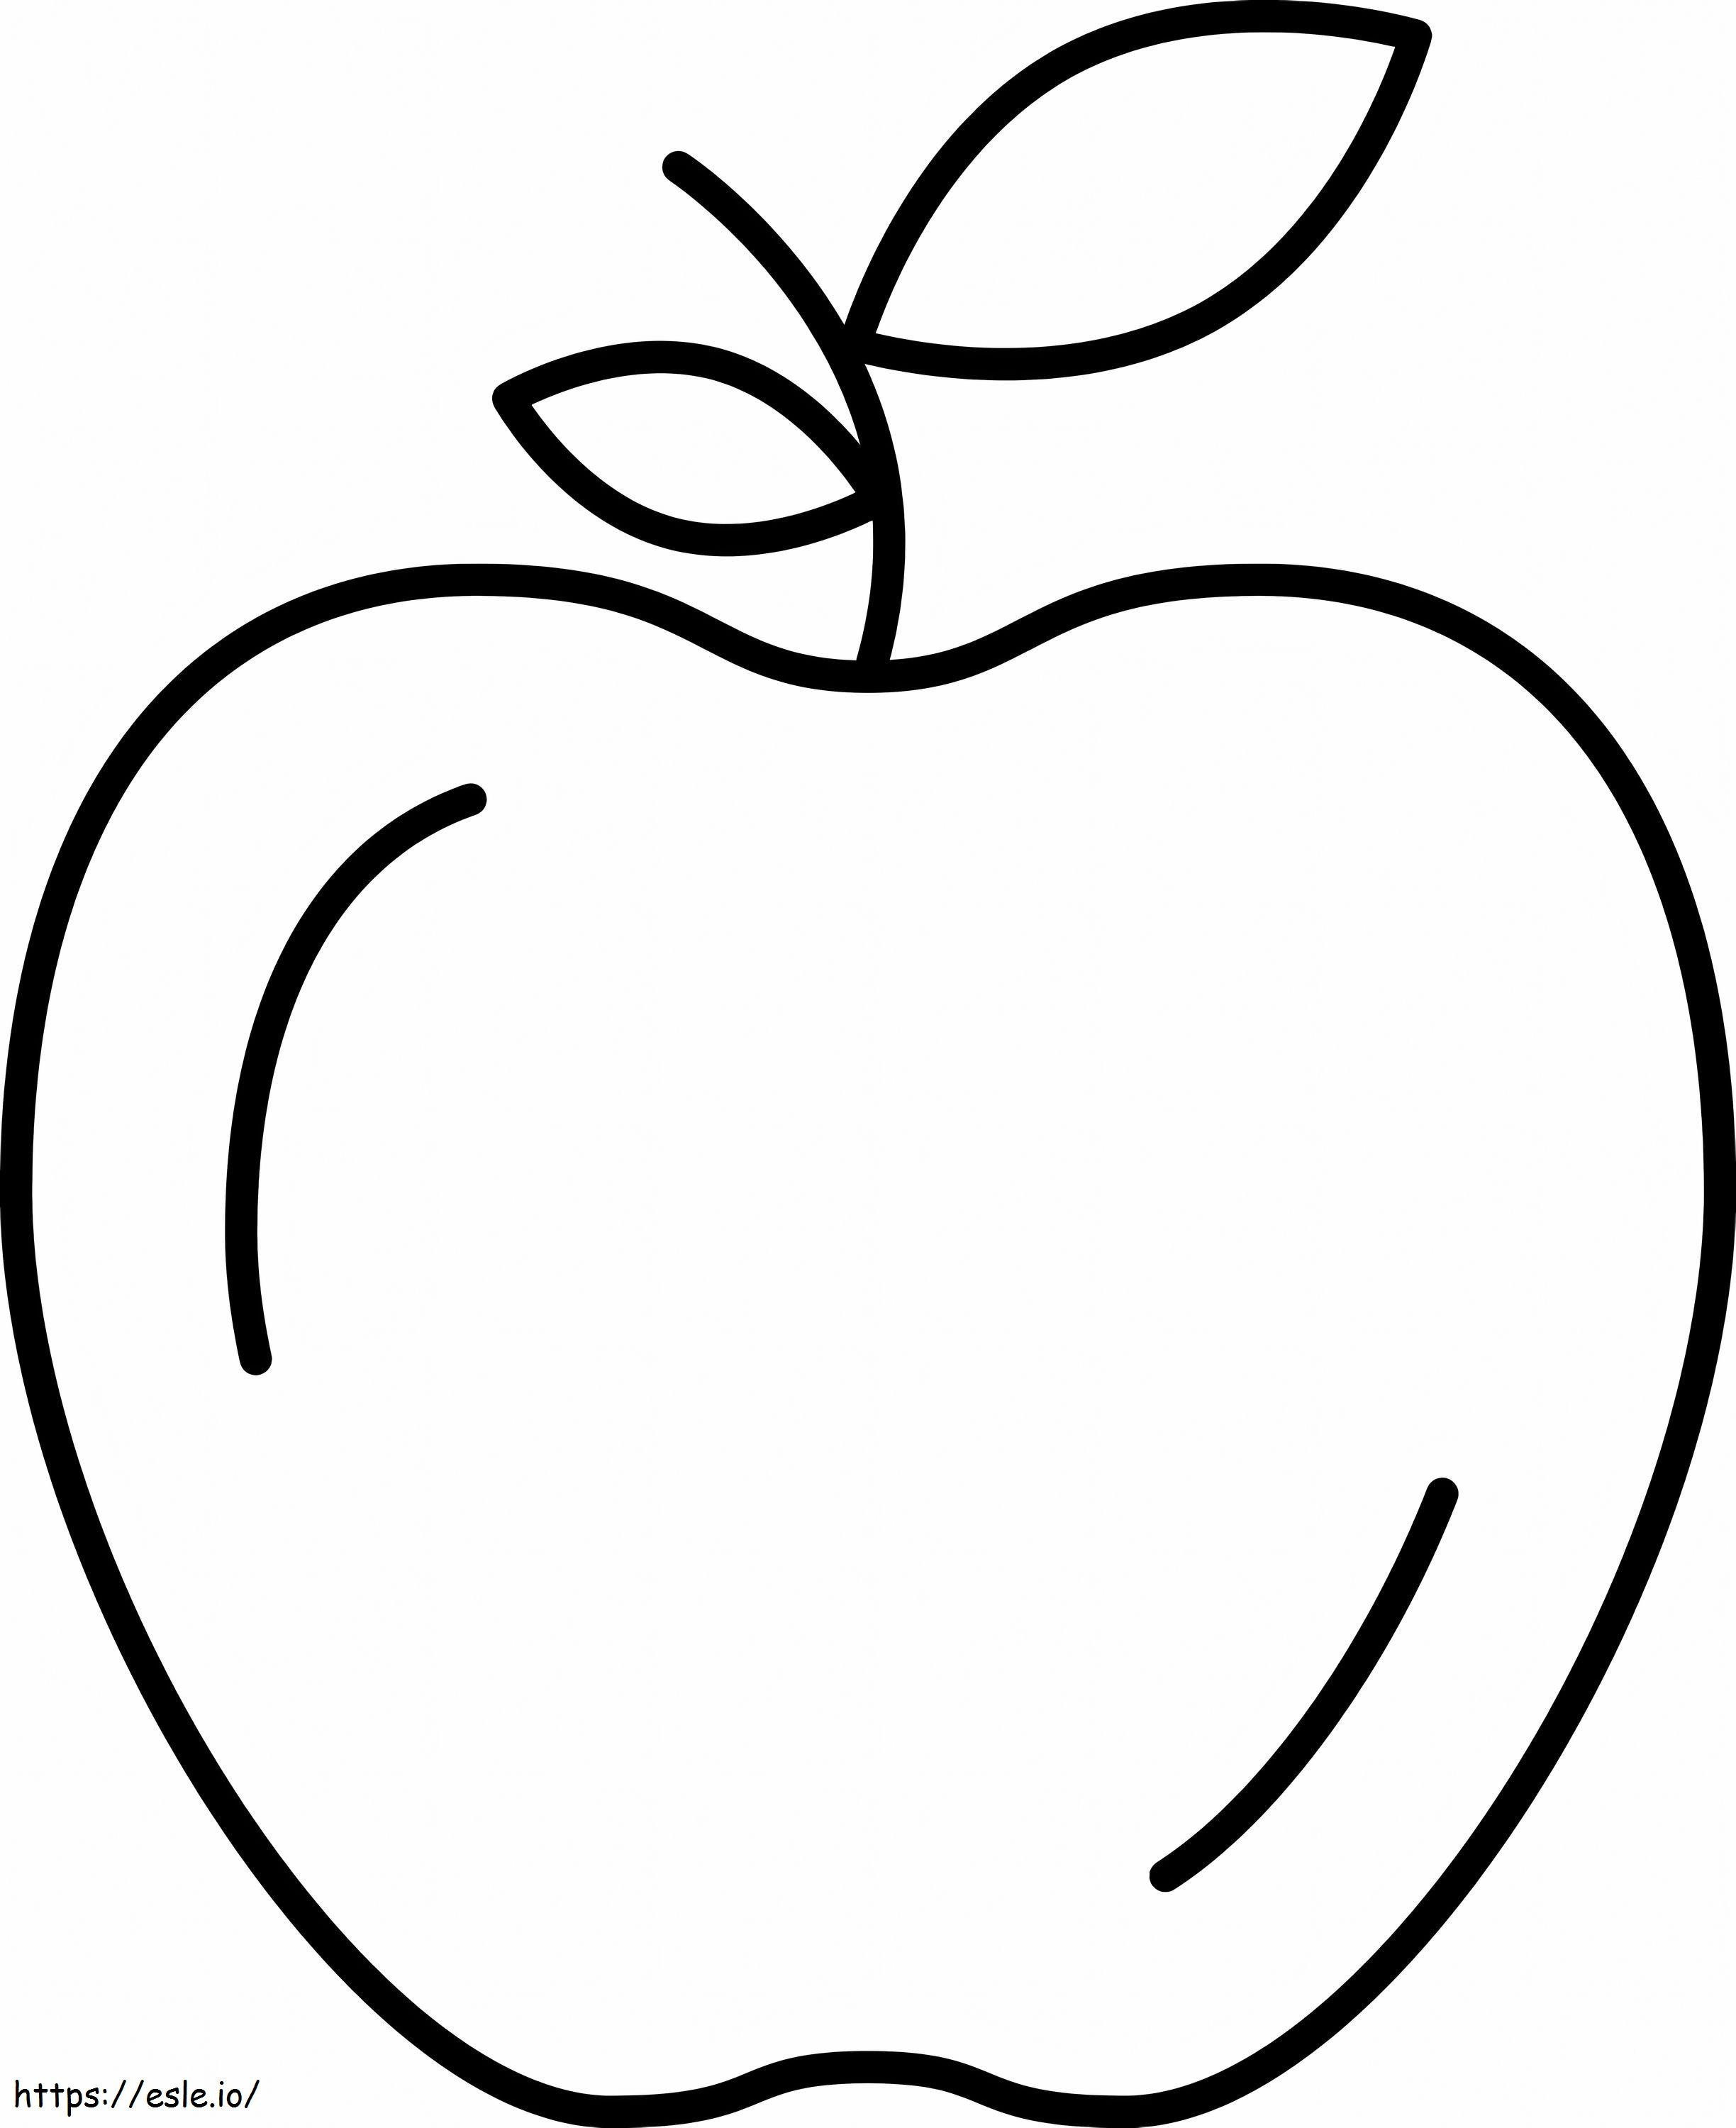 Coloriage Bonne pomme à imprimer dessin